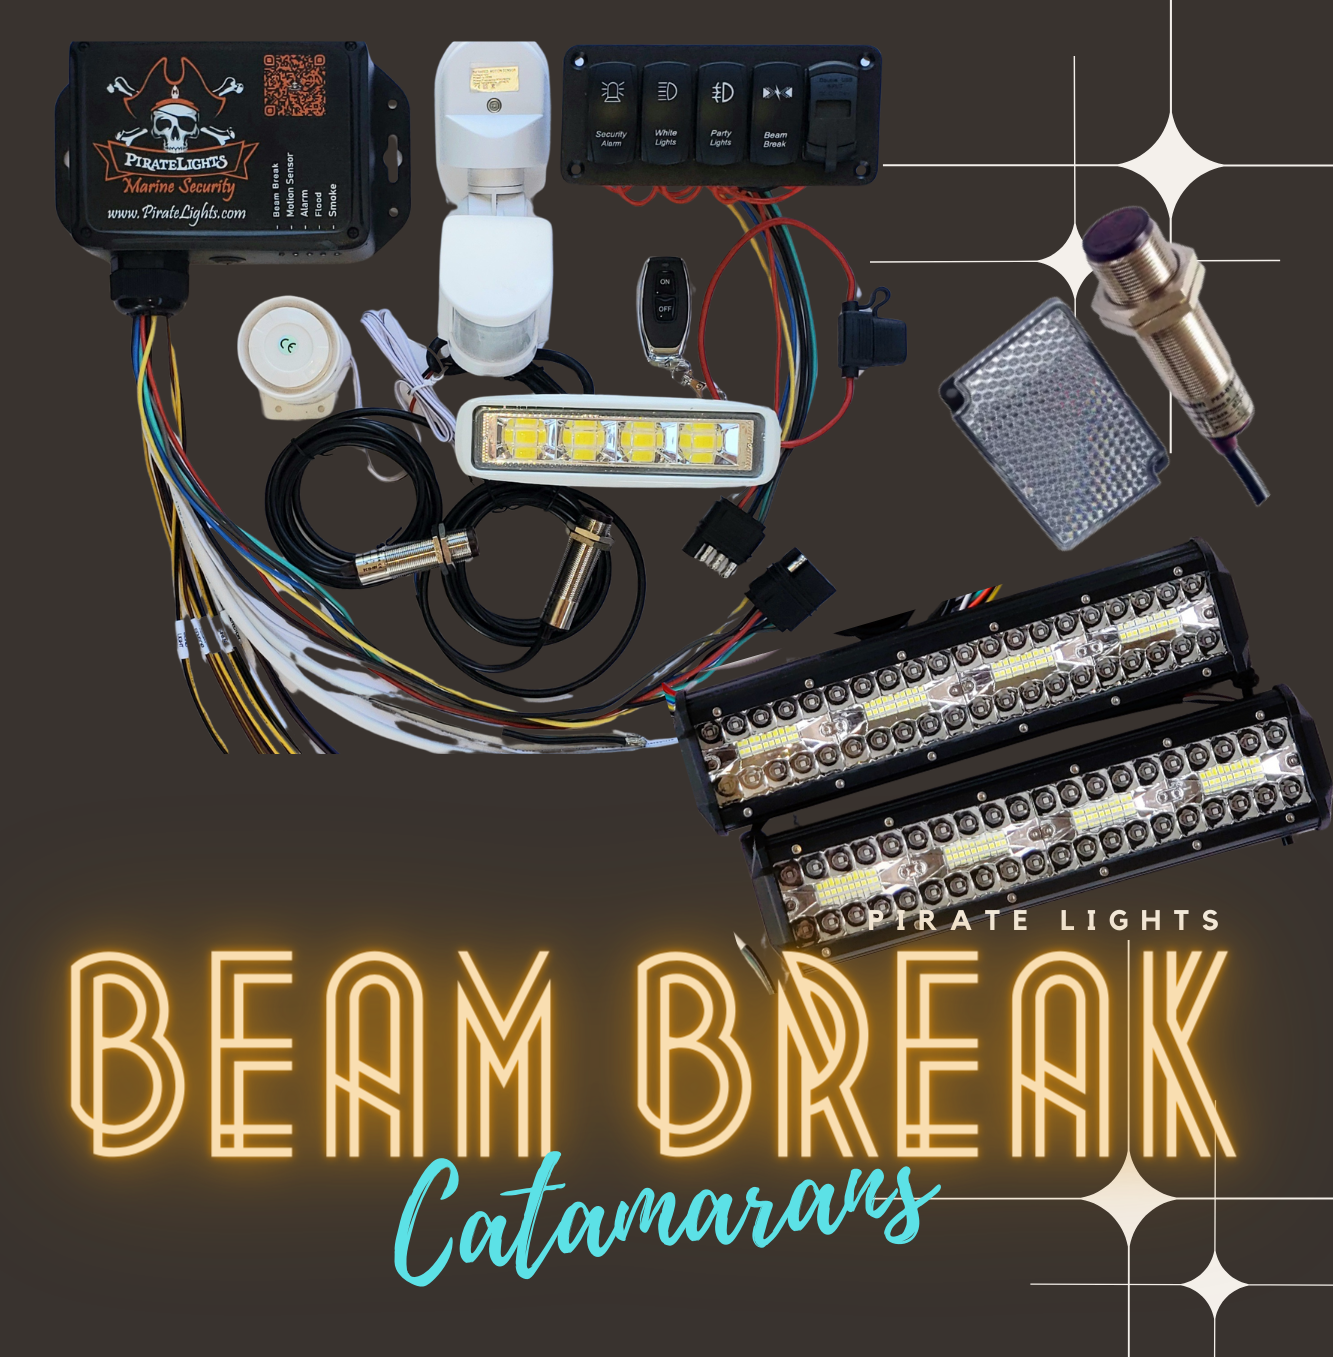 The Beam Break Unit